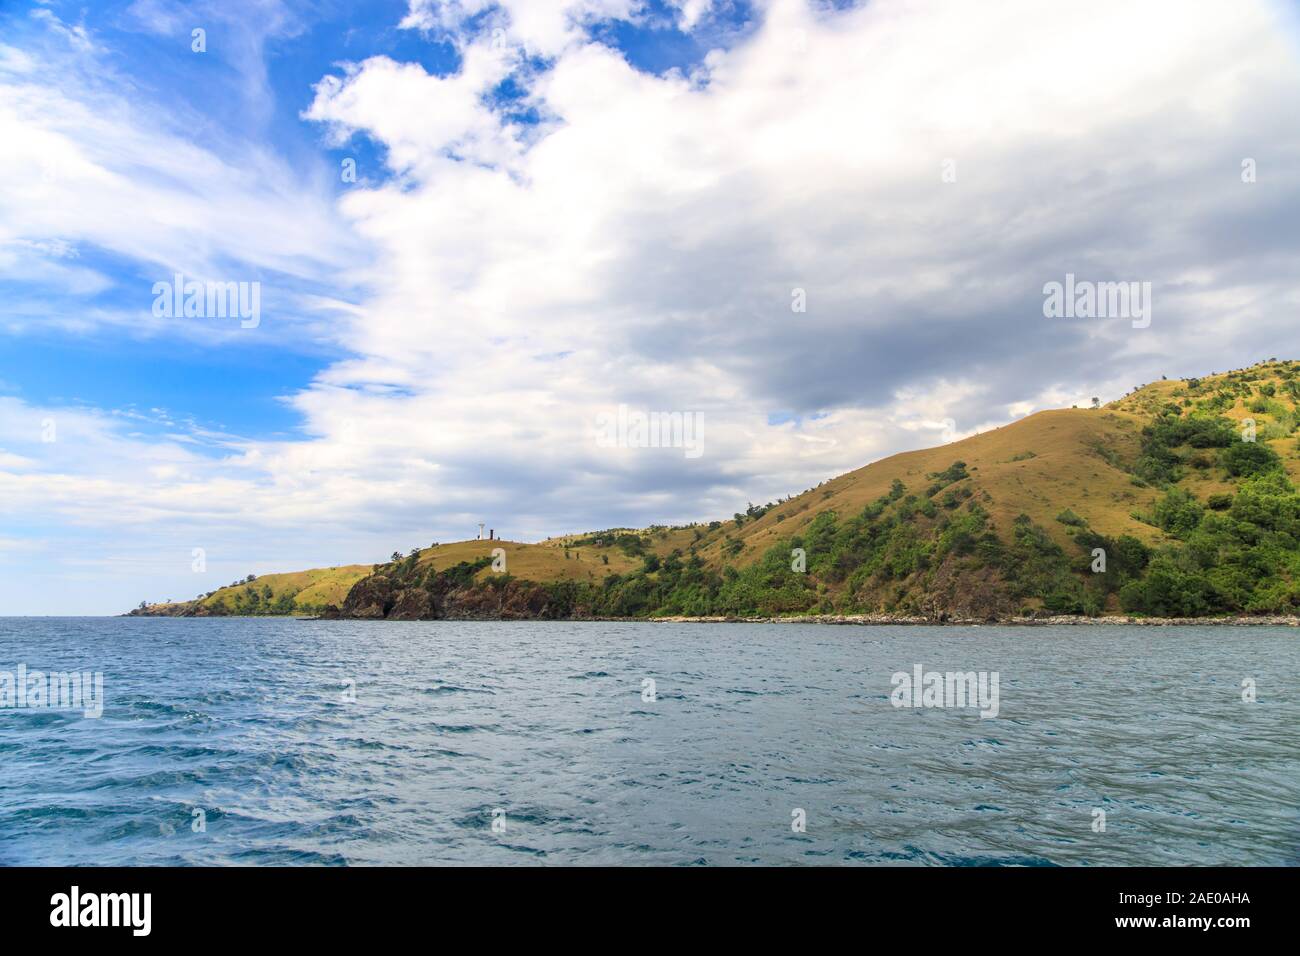 beautiful landscape at Zambales beach, Philippines Stock Photo